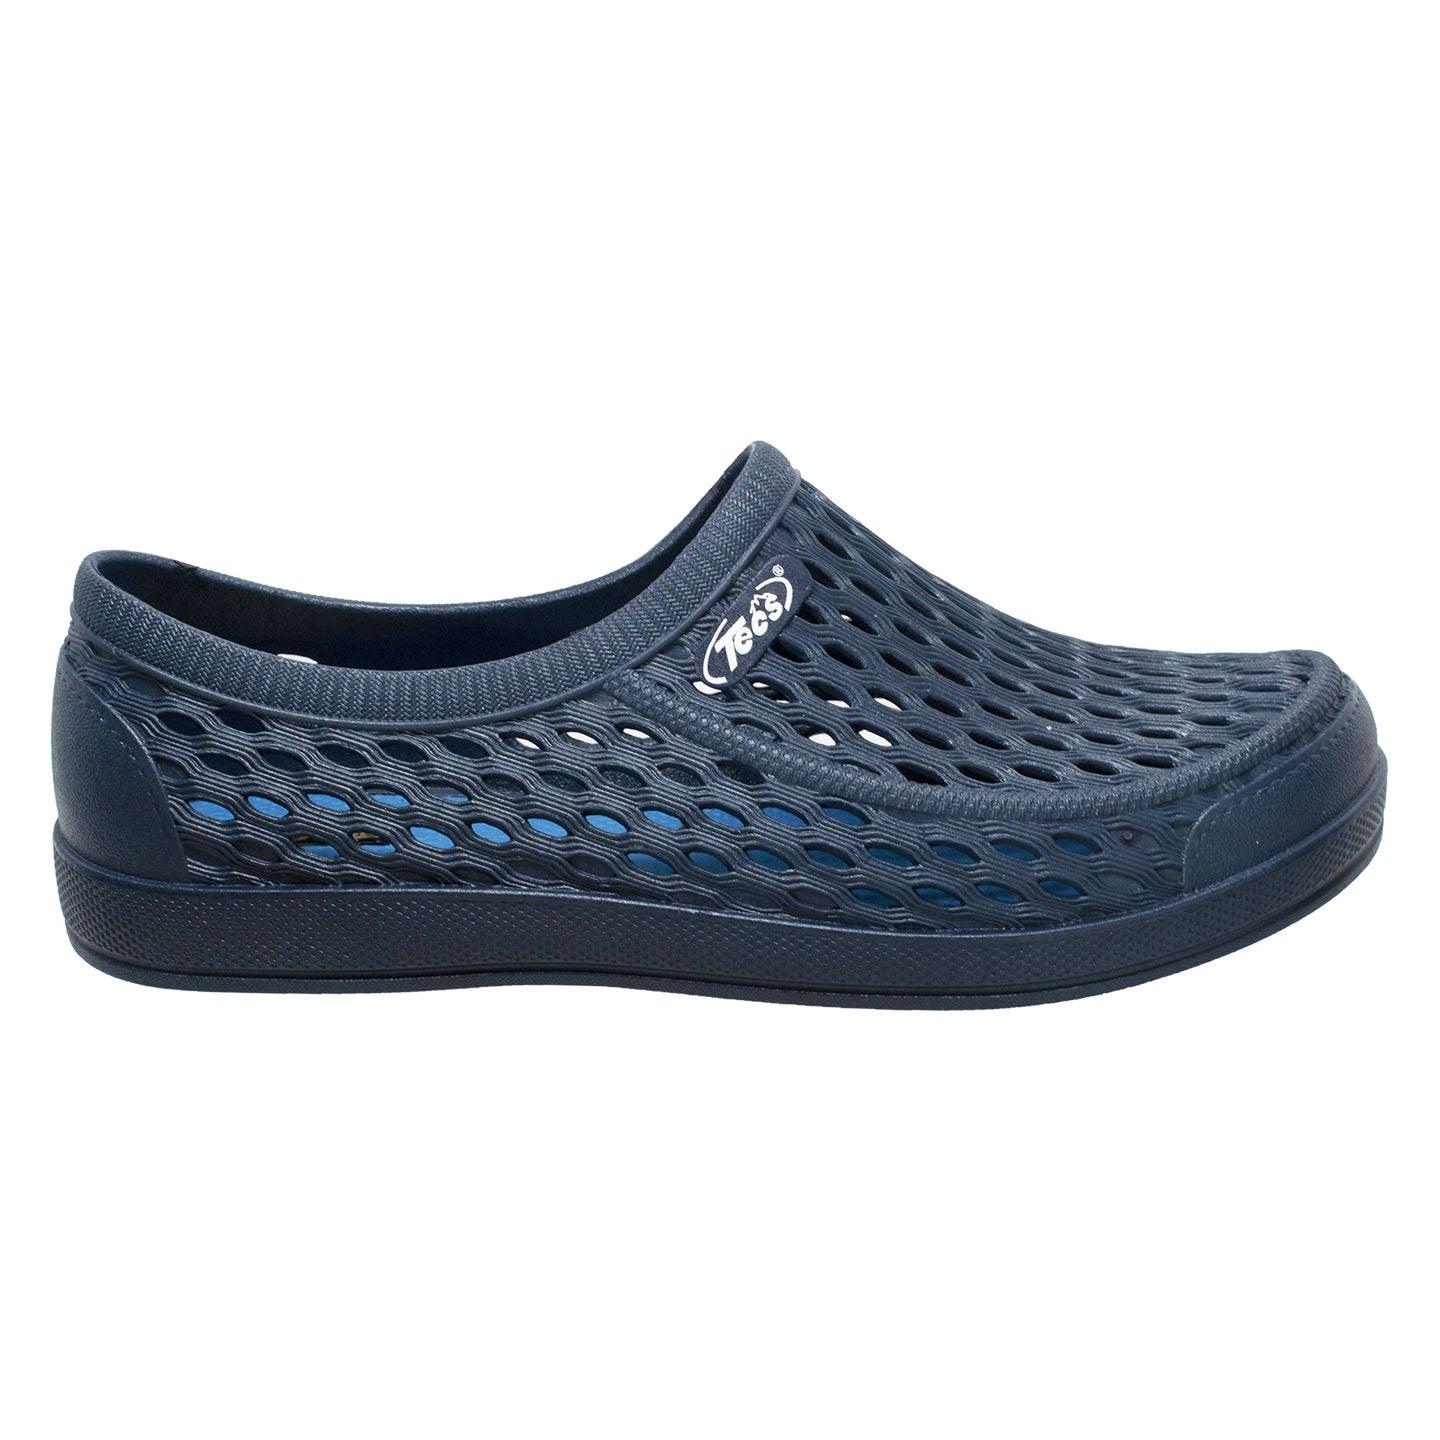 Tecs Men's 4" Relax Aqua Tecs Garden Shoes Navy - Flyclothing LLC